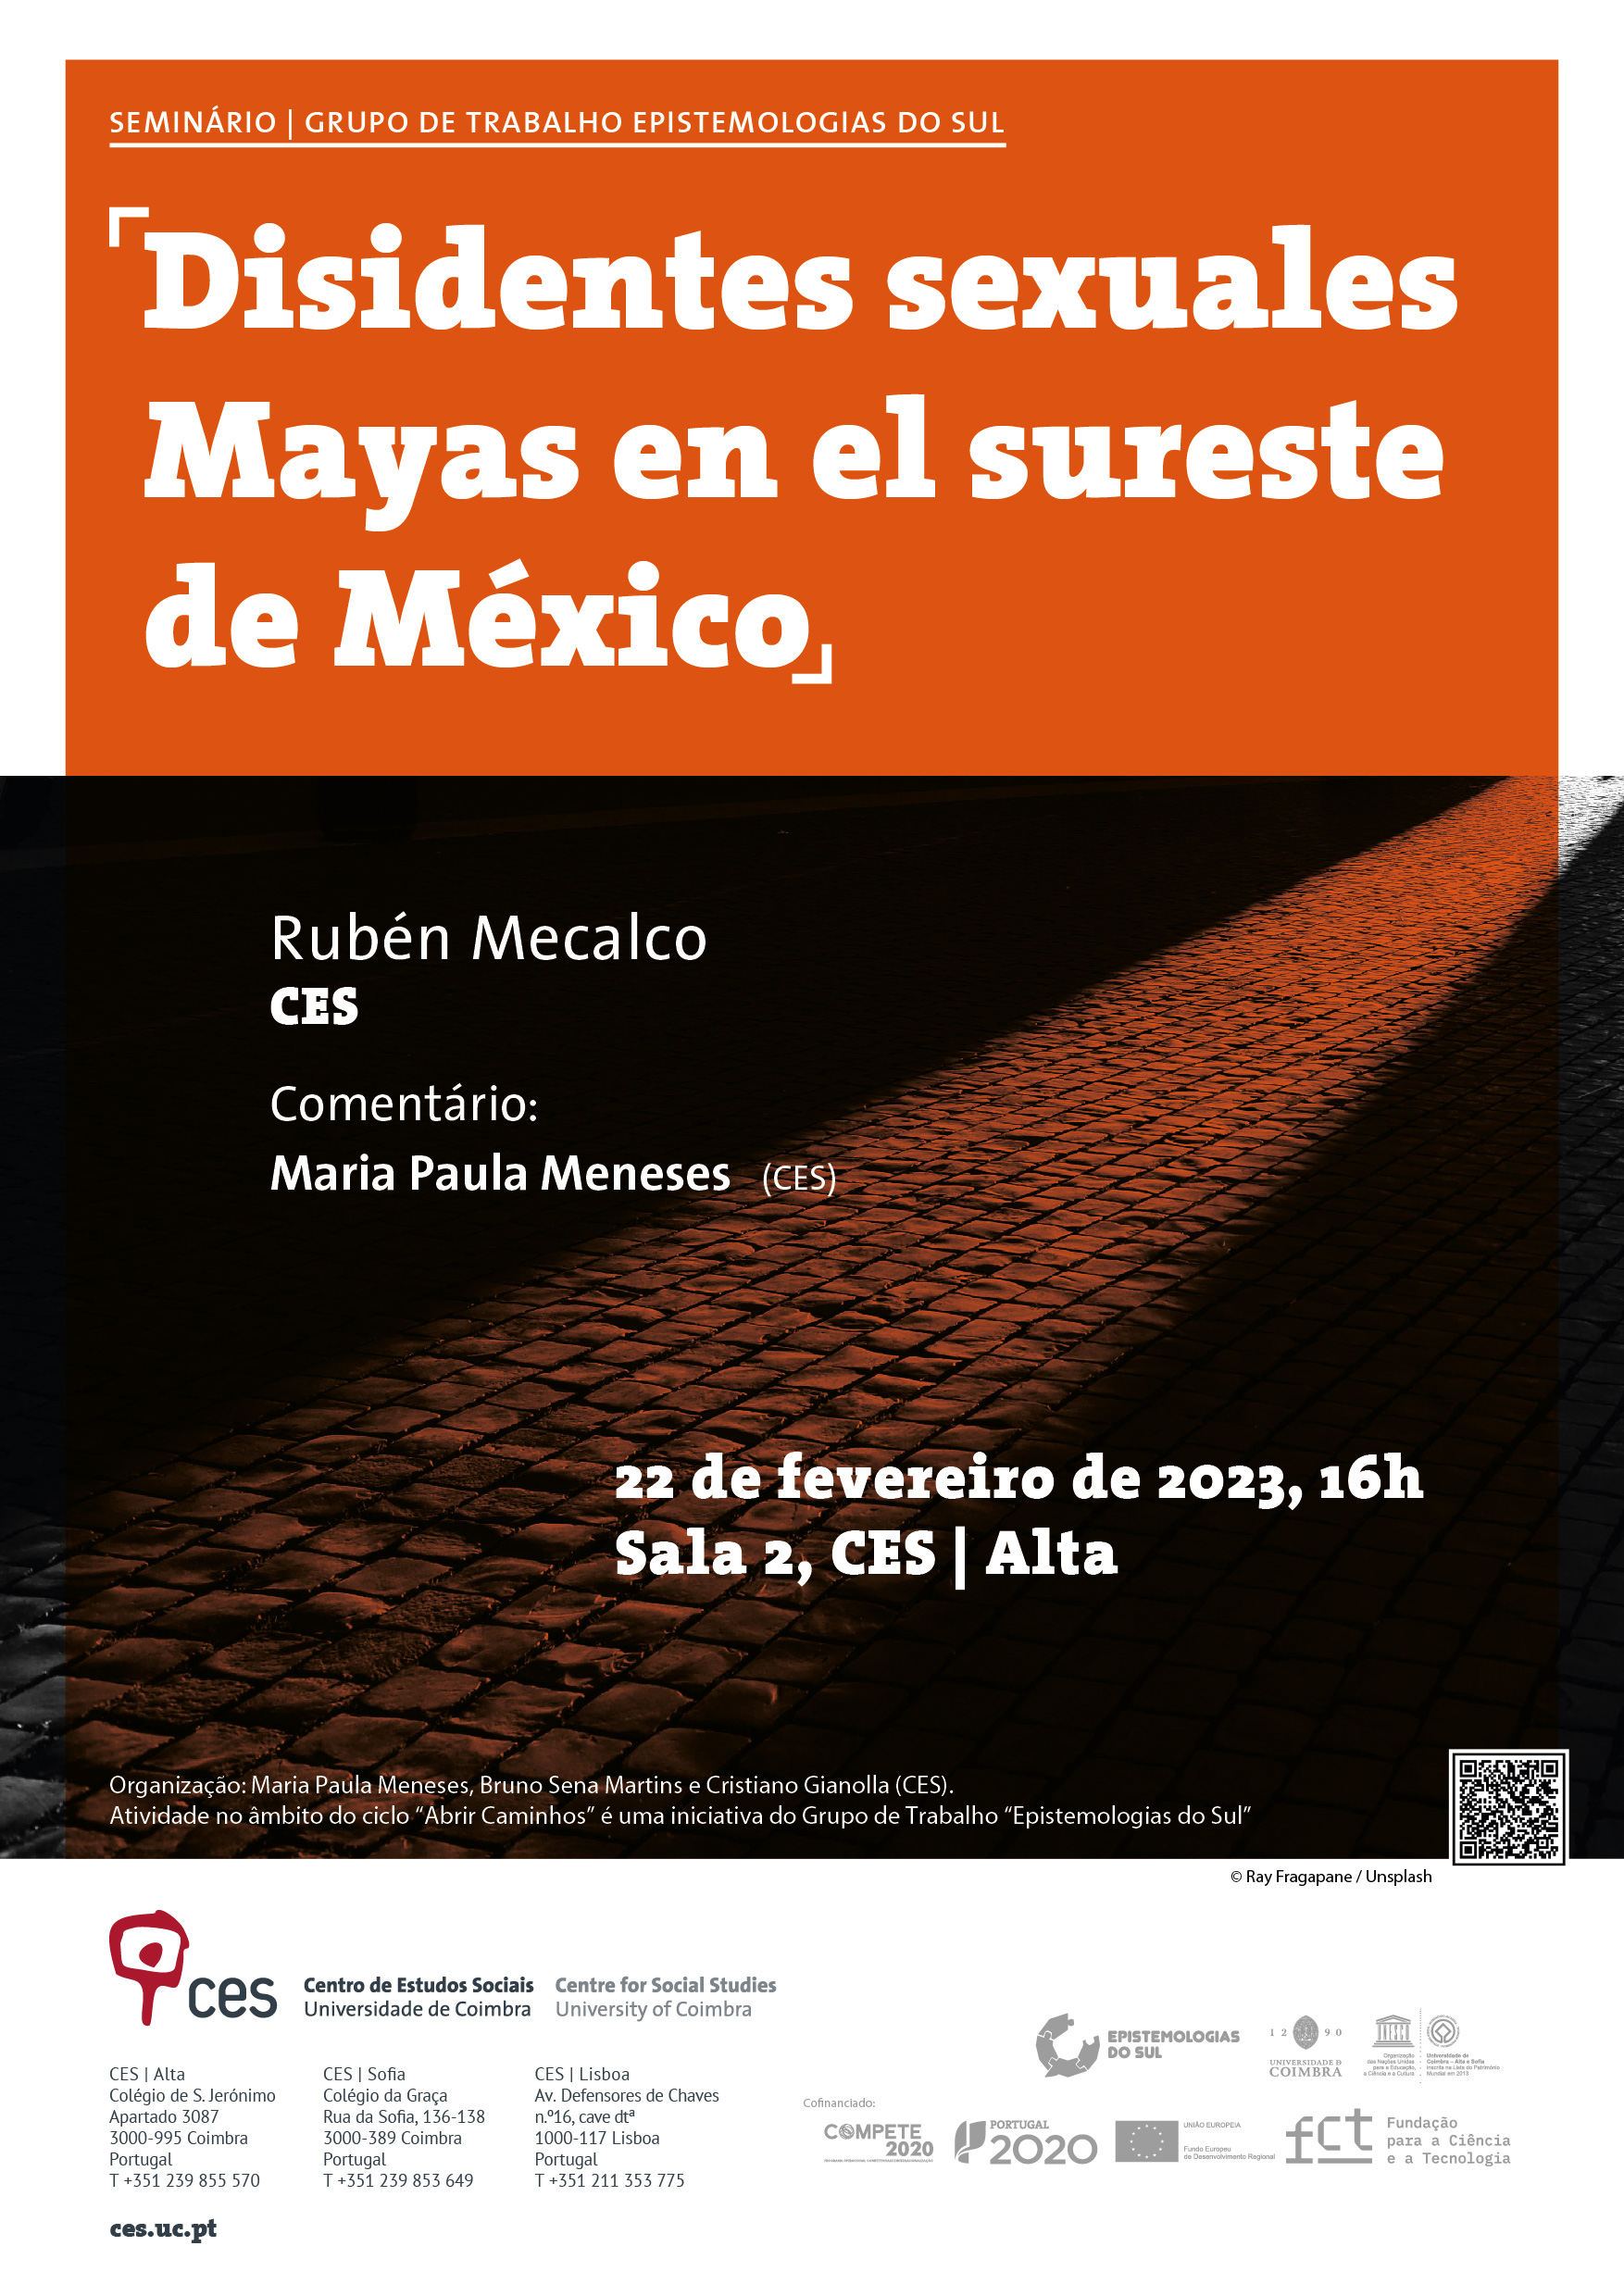 Disidentes sexuales Mayas en el sureste de México<span id="edit_41132"><script>$(function() { $('#edit_41132').load( "/myces/user/editobj.php?tipo=evento&id=41132" ); });</script></span>